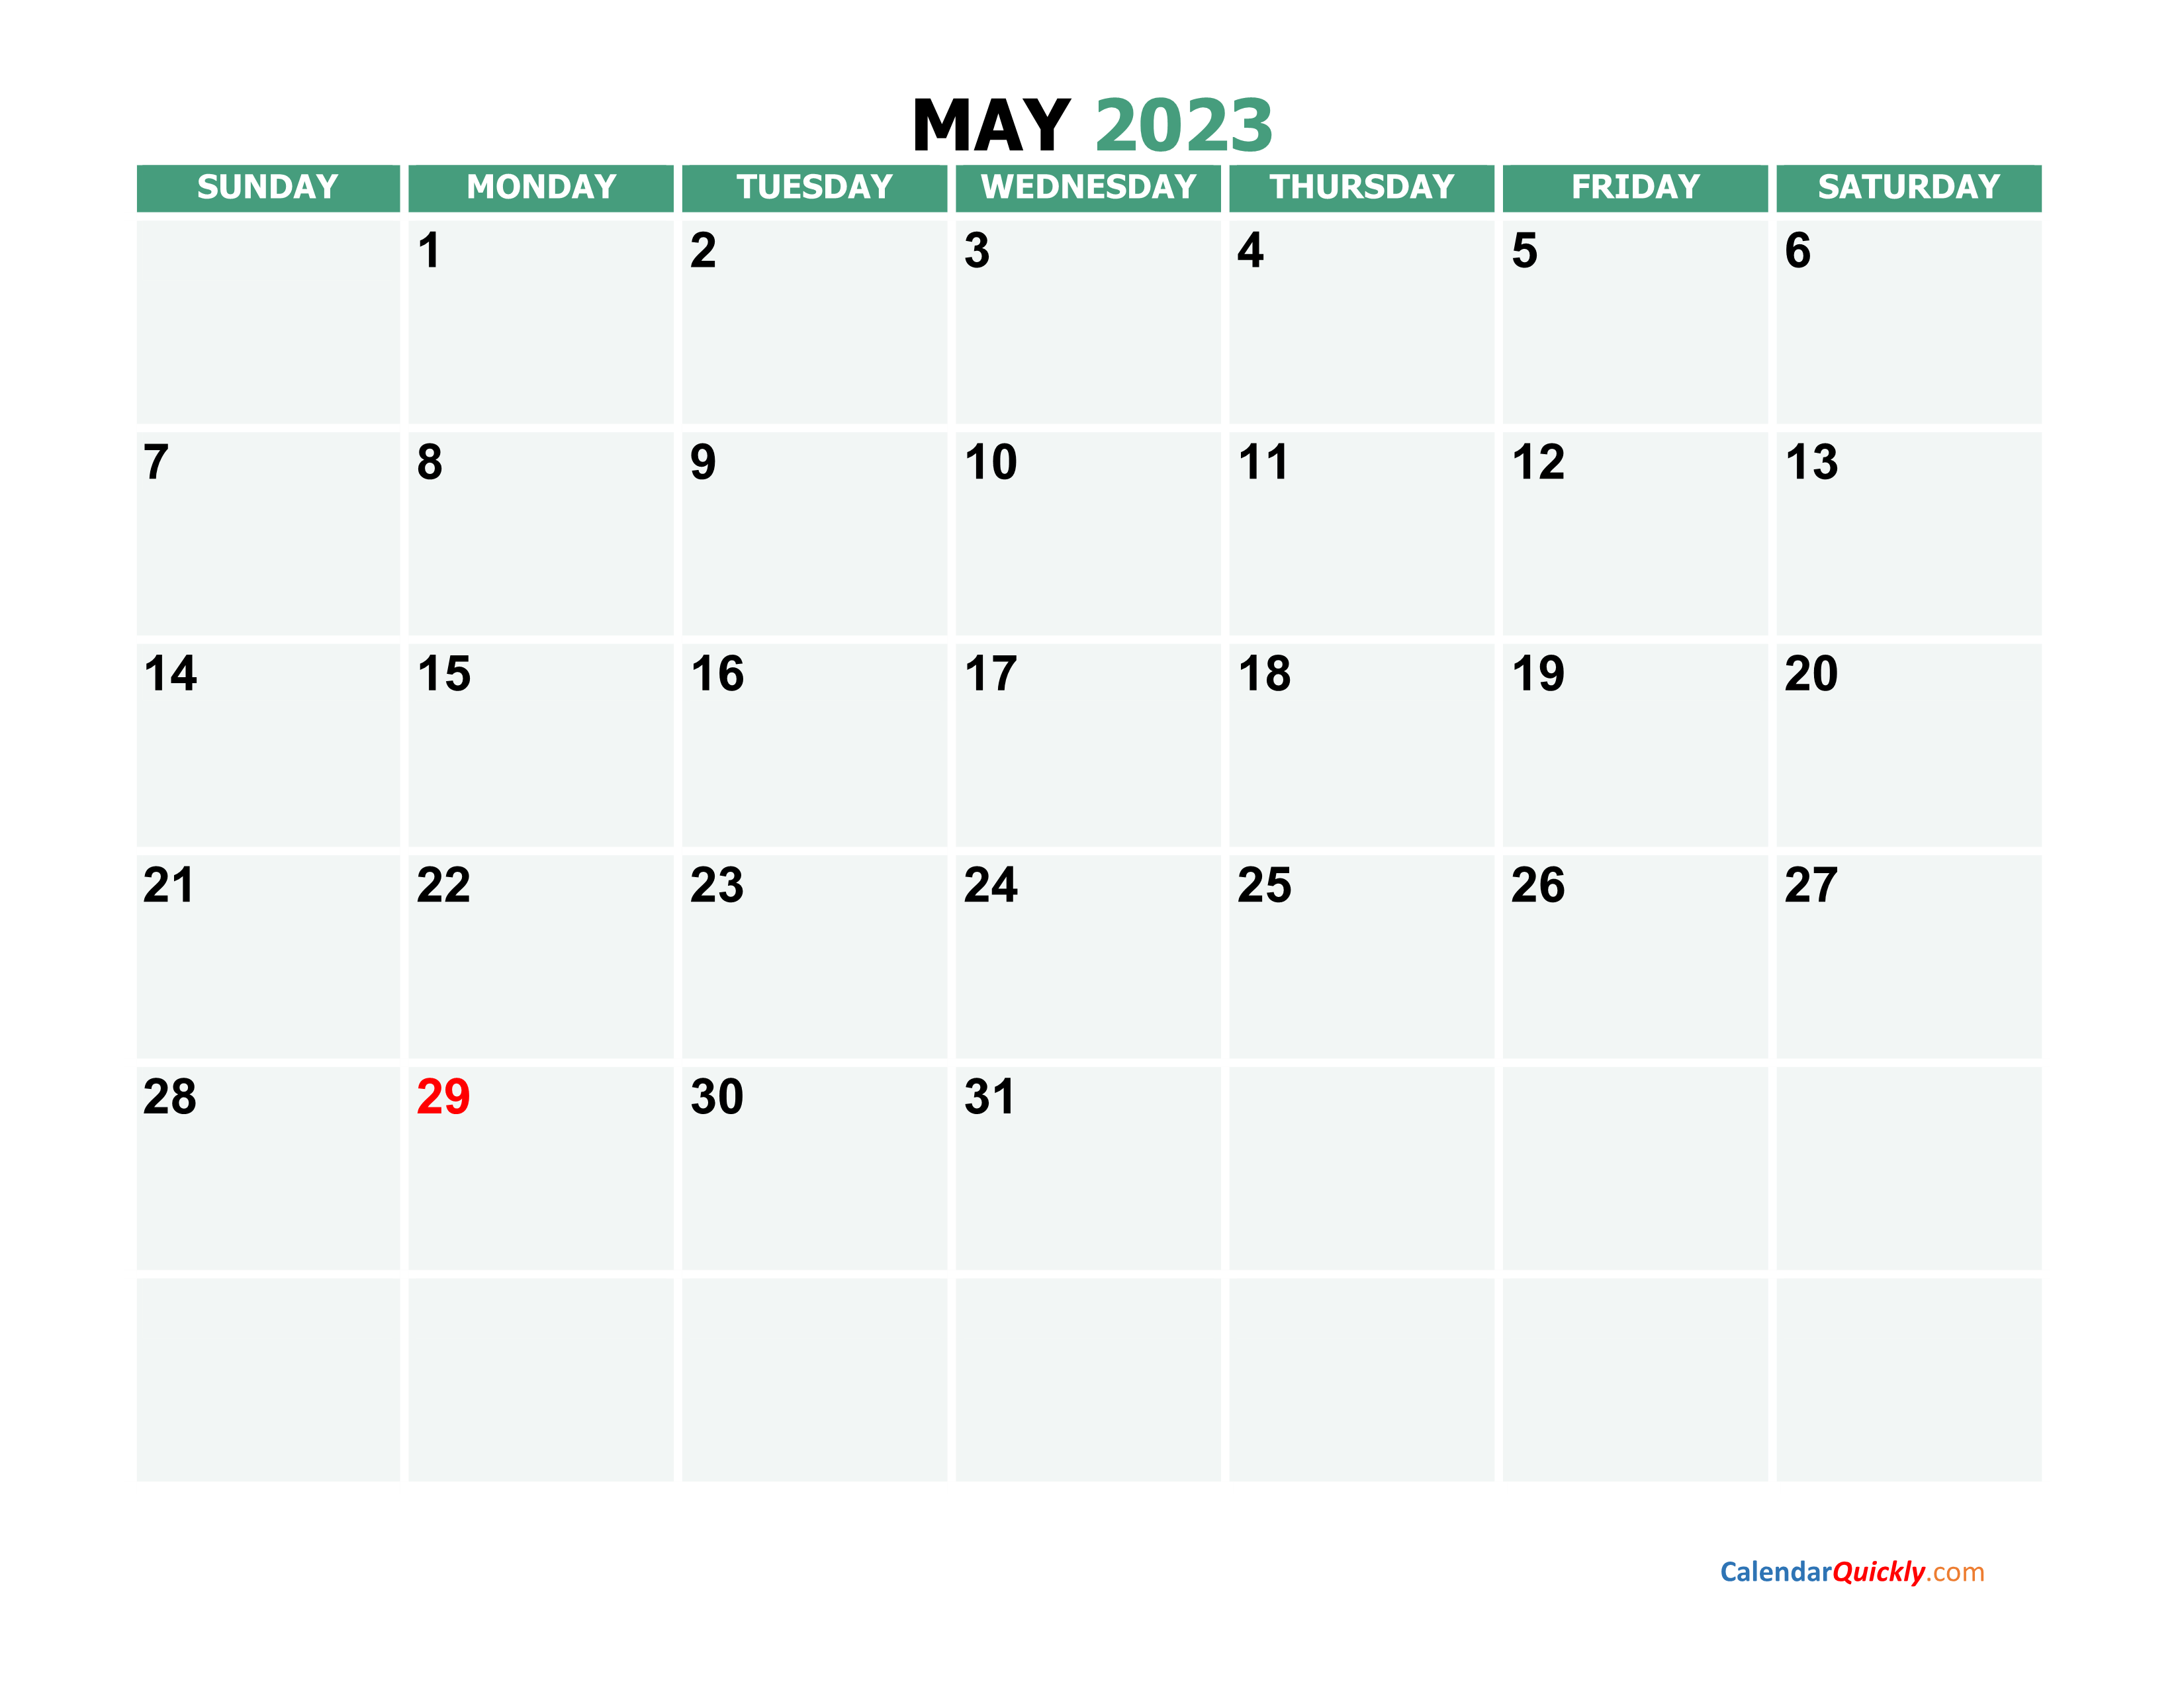 may-2023-calendars-calendar-quickly